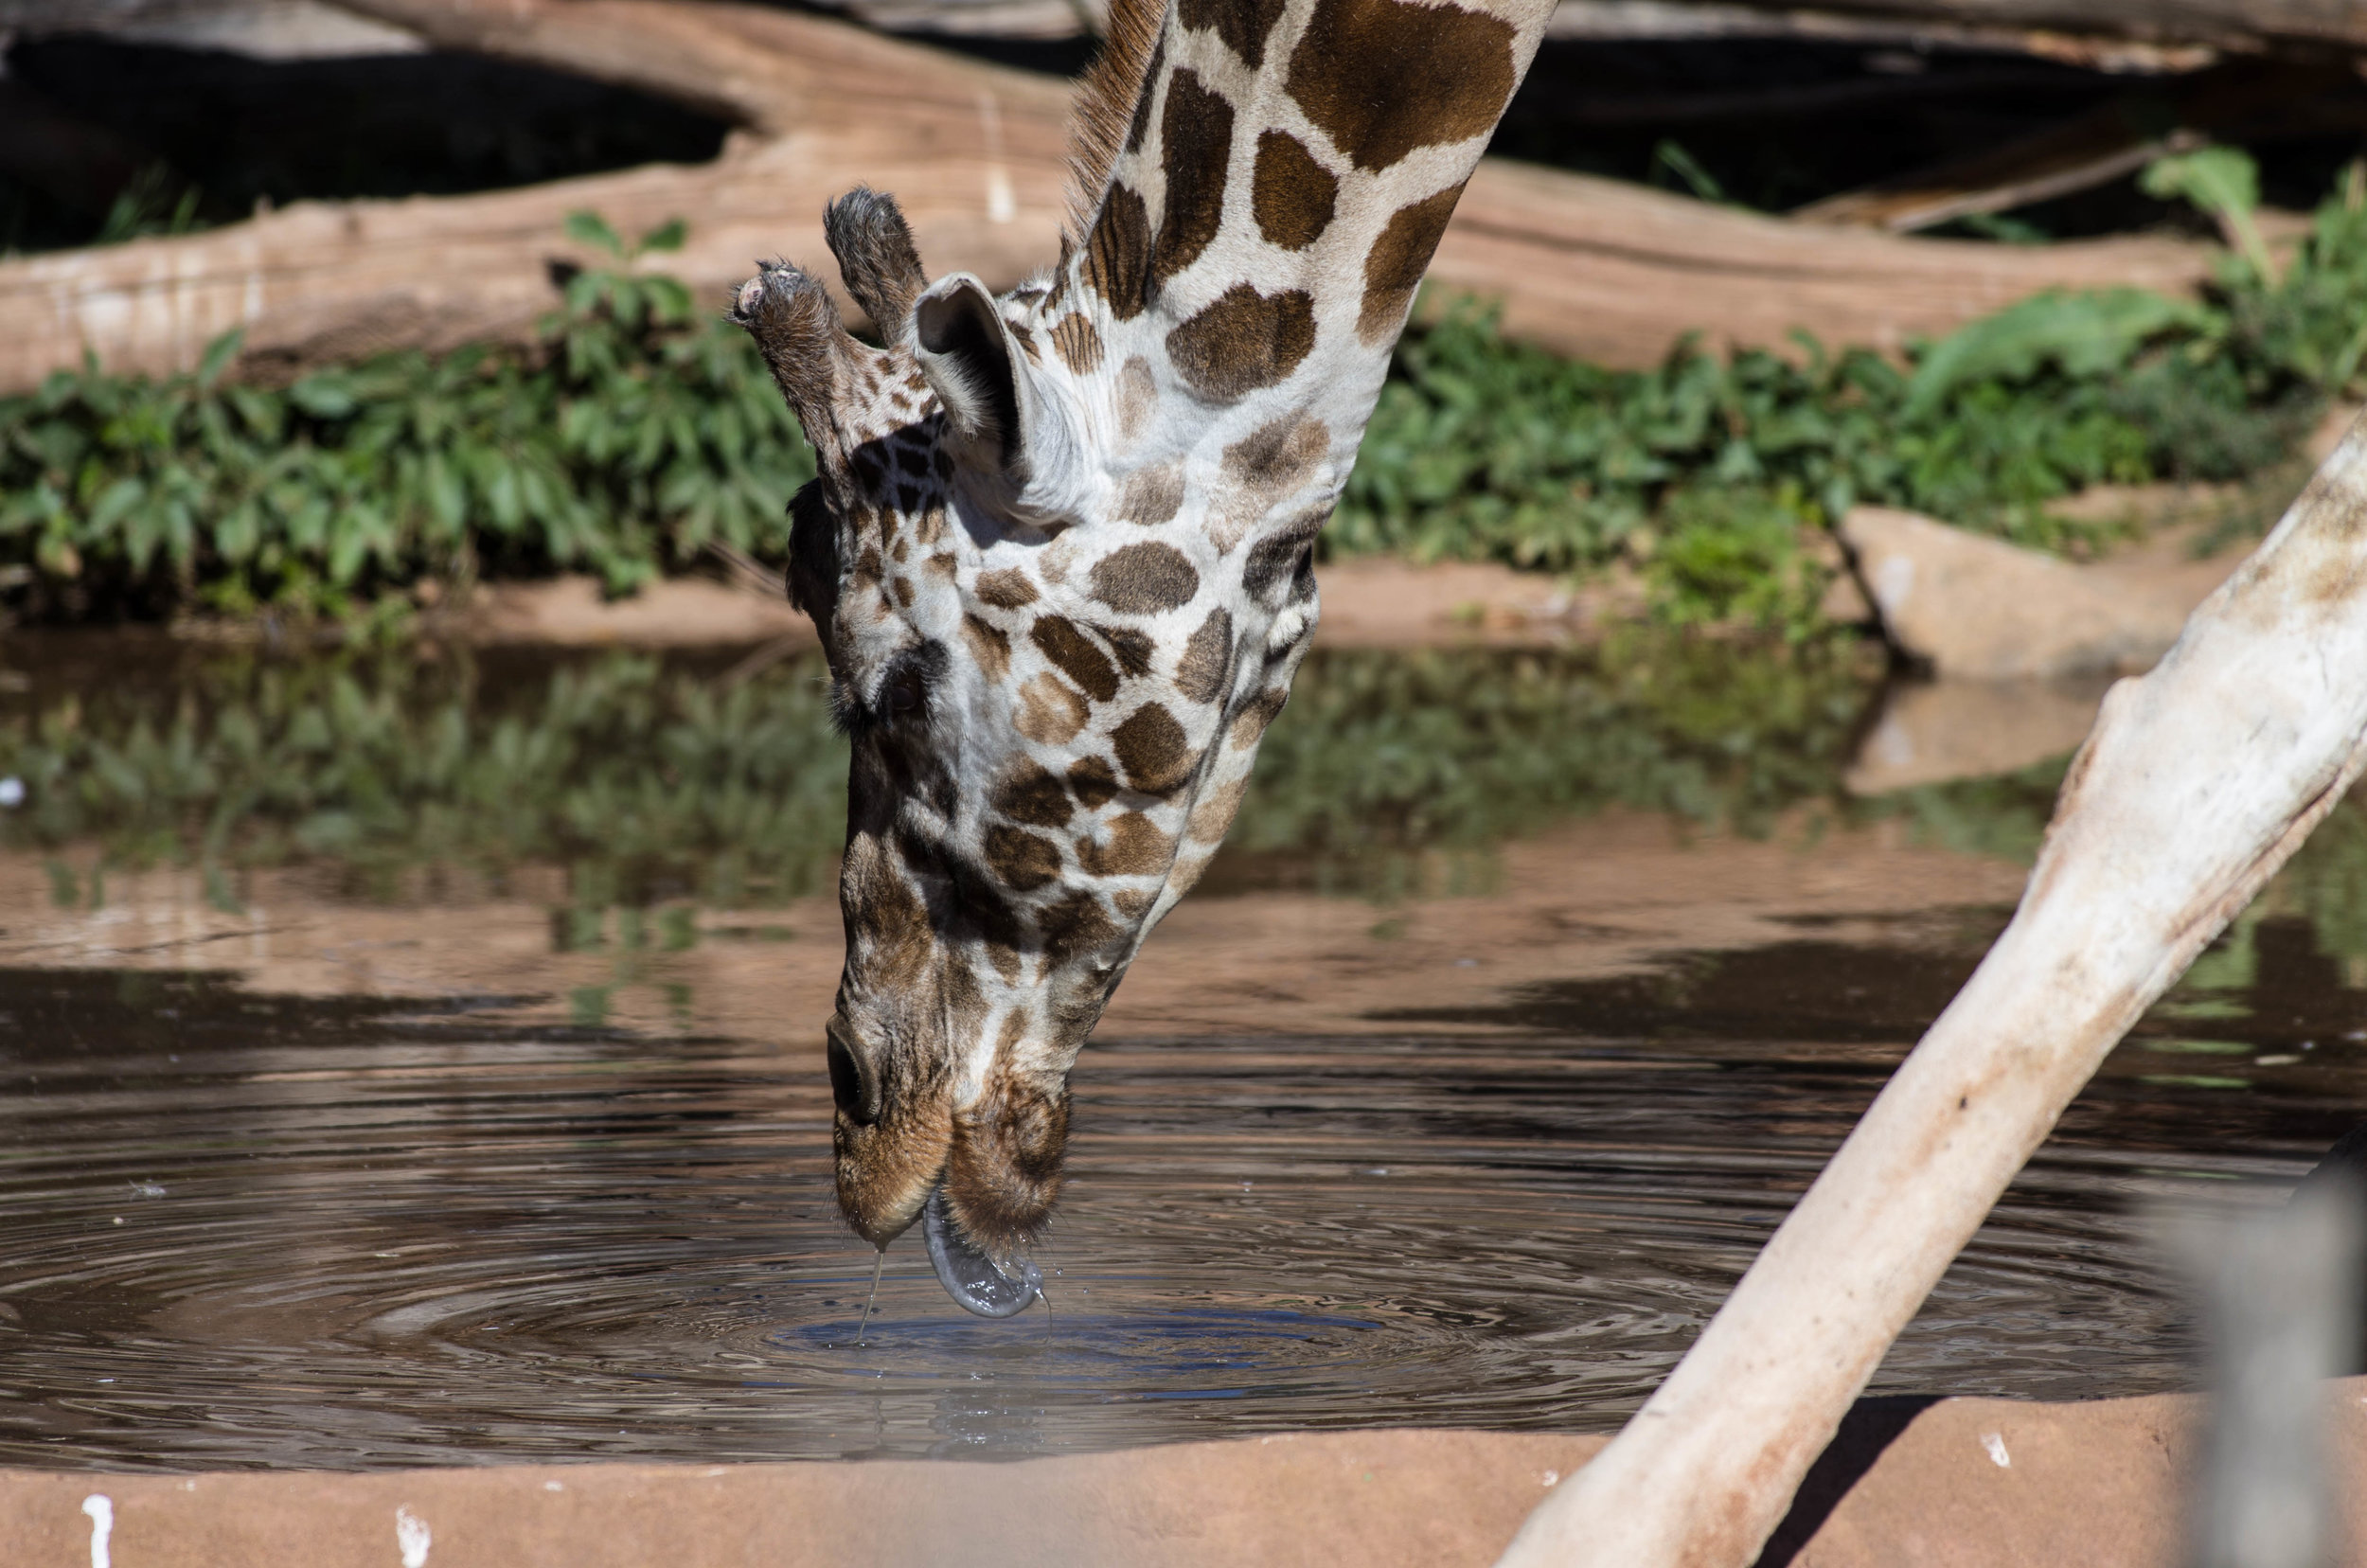 giraffe sipping